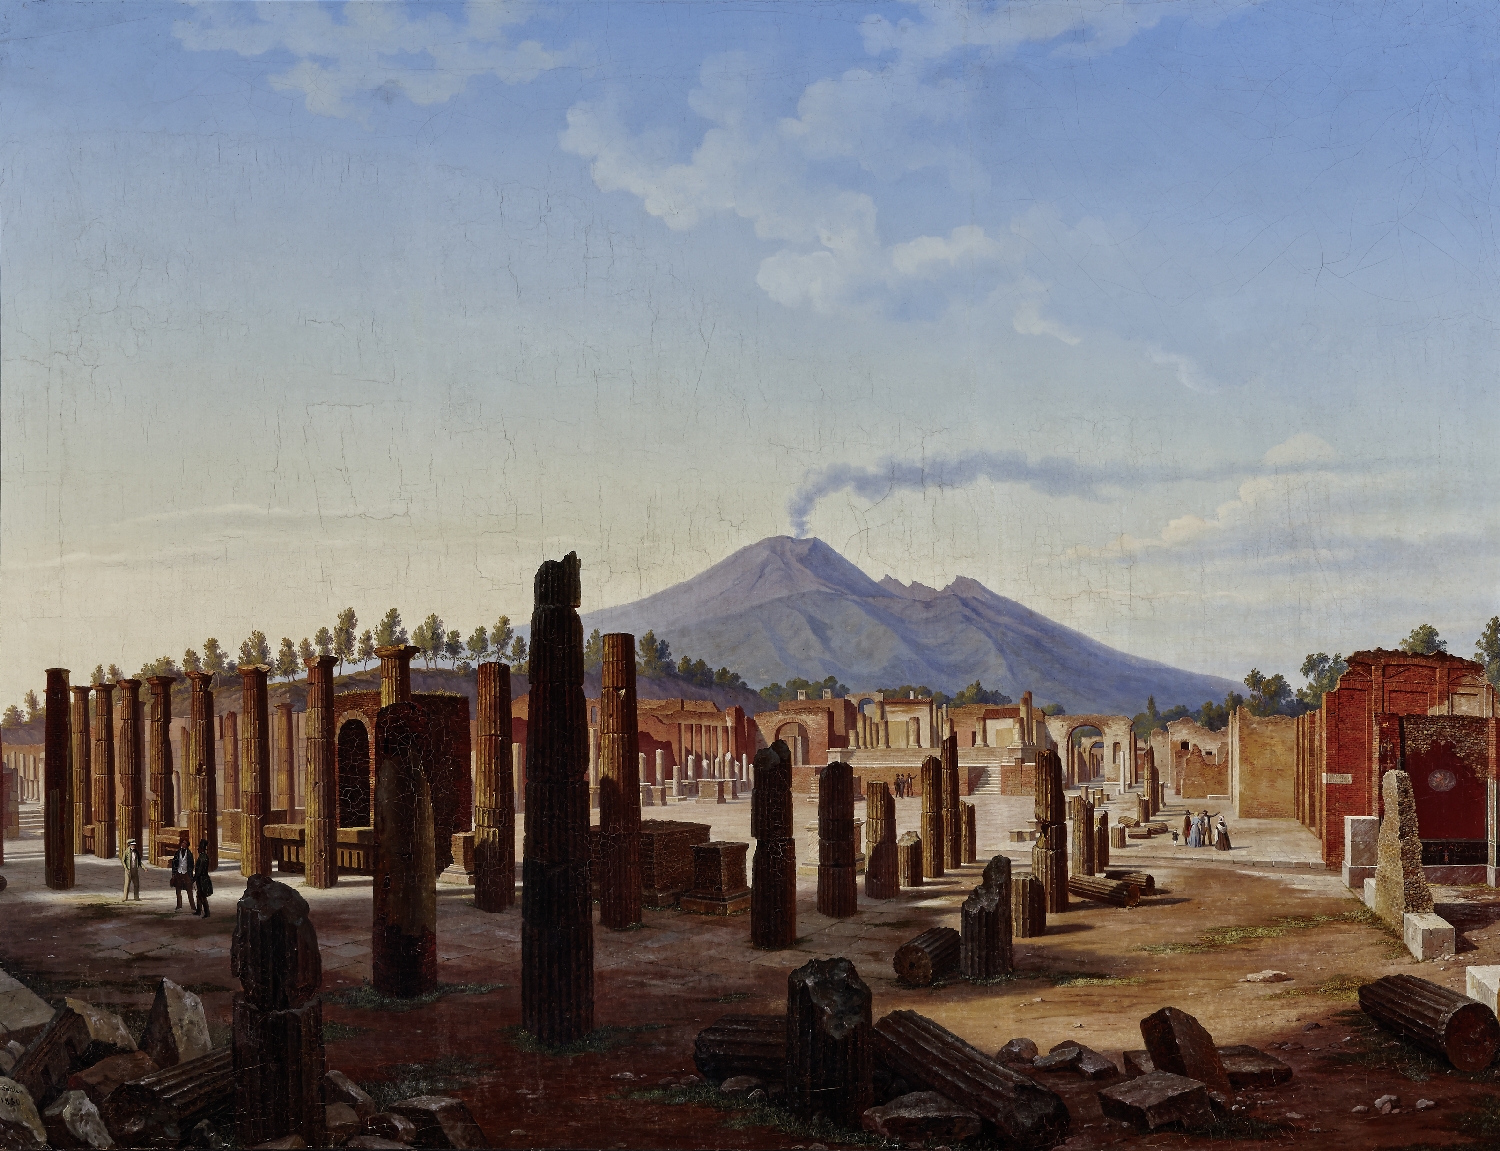 Das Forum in Pompeji, im Hintergrund der Vesuv, 1850, Öl auf Leinwand, Inv.-Nr. 9021-49